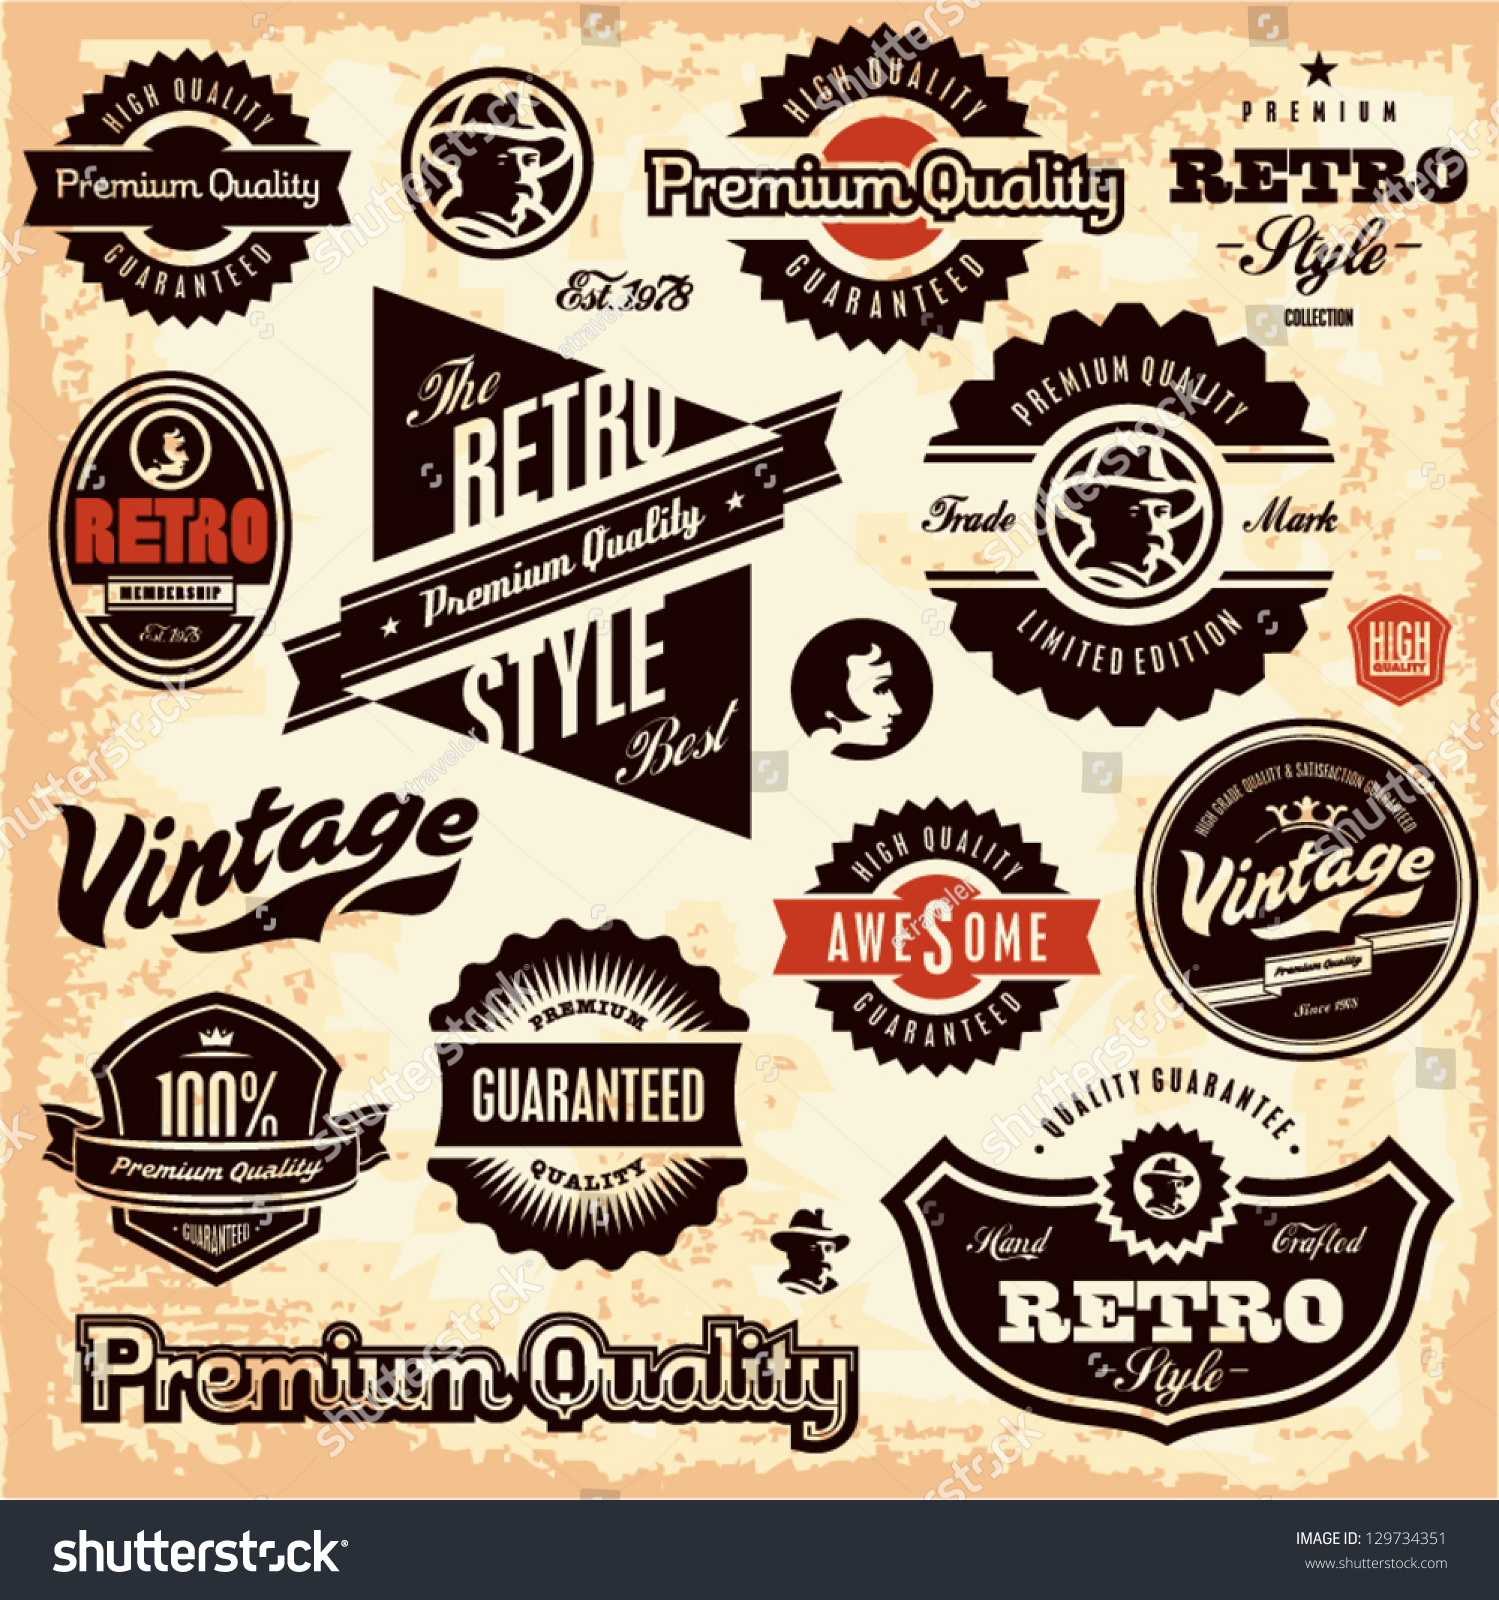 Retro Labels. Vintage Labels Collection. Premium Quality Guarantee ...